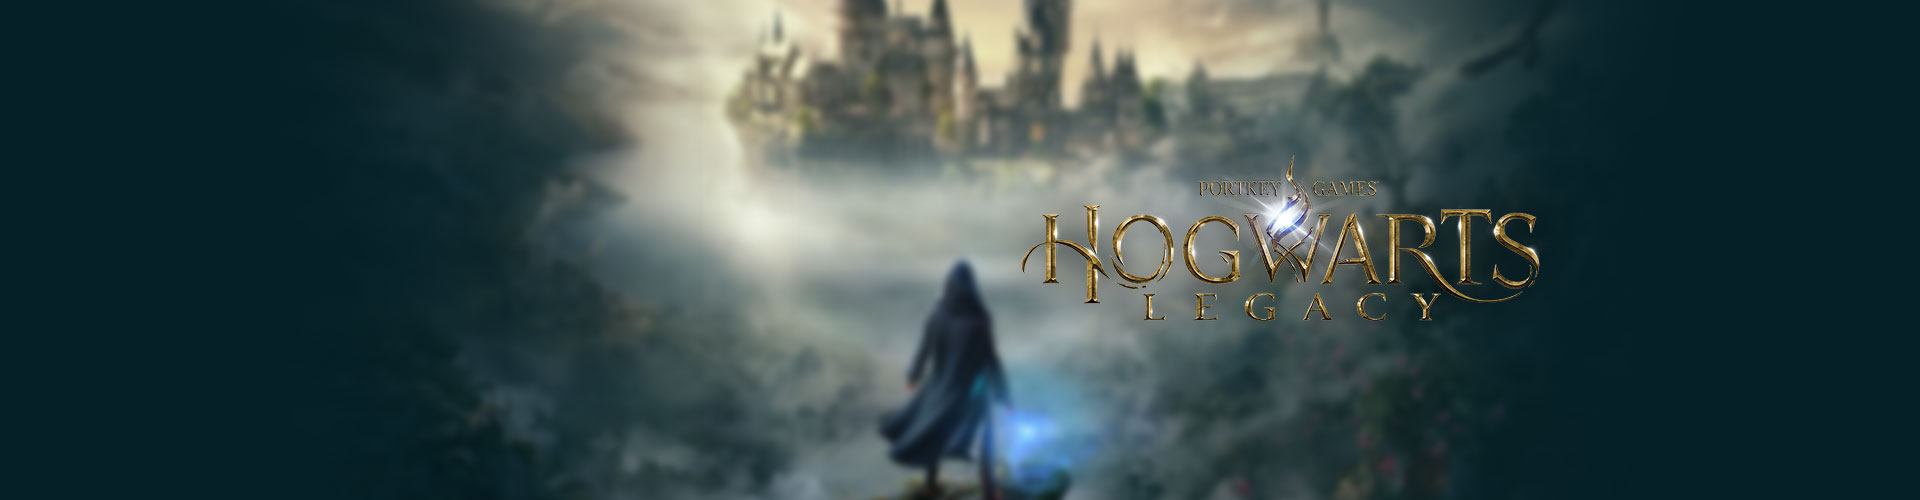 Configuration PC minimale, recommandée et 4K pour jouer à Hogwarts Legacy : L'Héritage de Poudlard